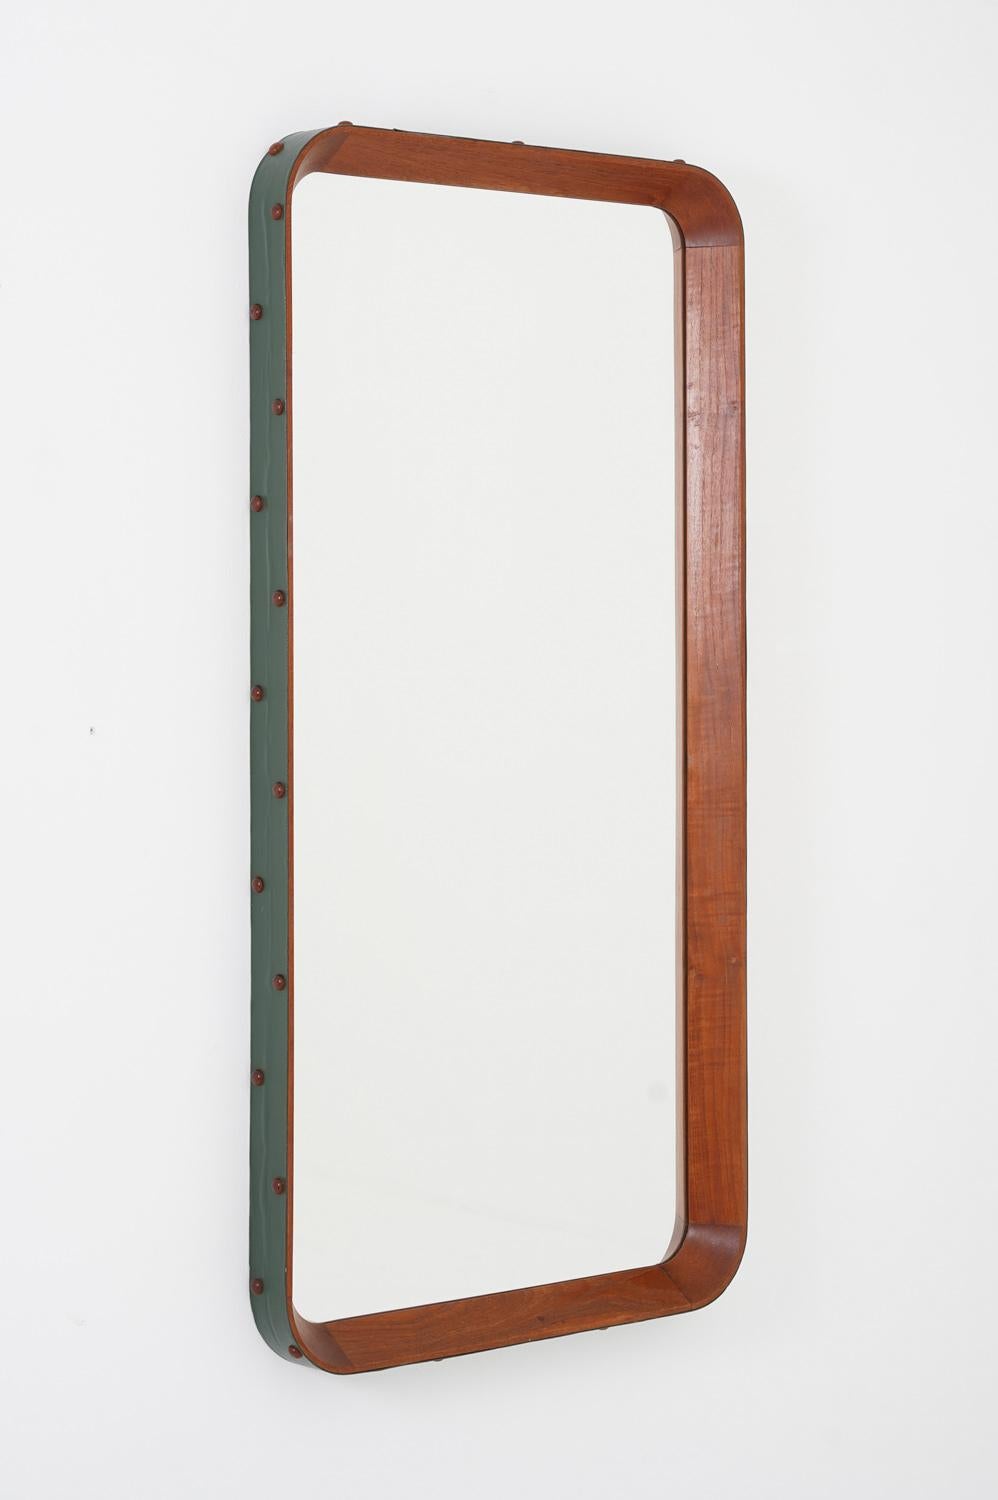 Sehr seltener Spiegel, Otto Schulz zugeschrieben, für Boet, Schweden, 1940er Jahre.

Dieser große Spiegel besteht aus einem massiven Teakholzrahmen, der mit grünem Kunstleder überzogen ist und durch Dübel aus Teakholz gehalten wird. 

Zustand: